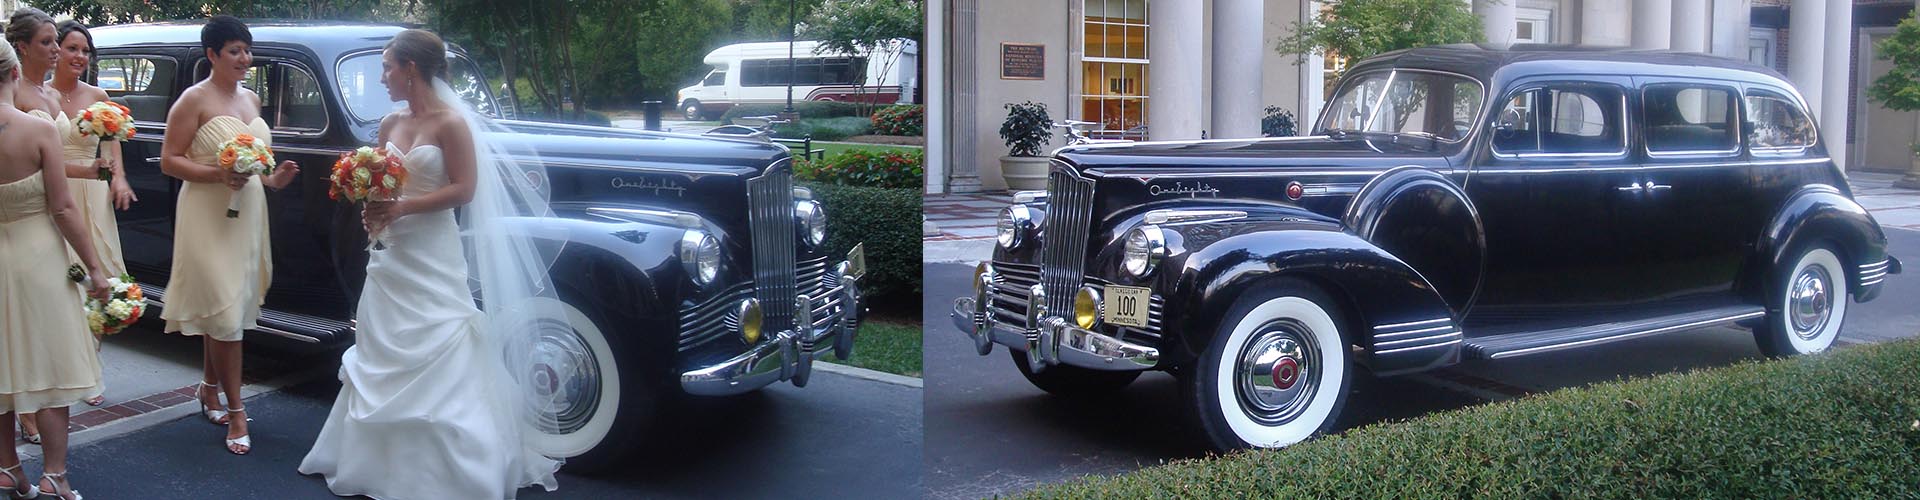 Classic Car Wedding Transportation 1942 Packard Luxury